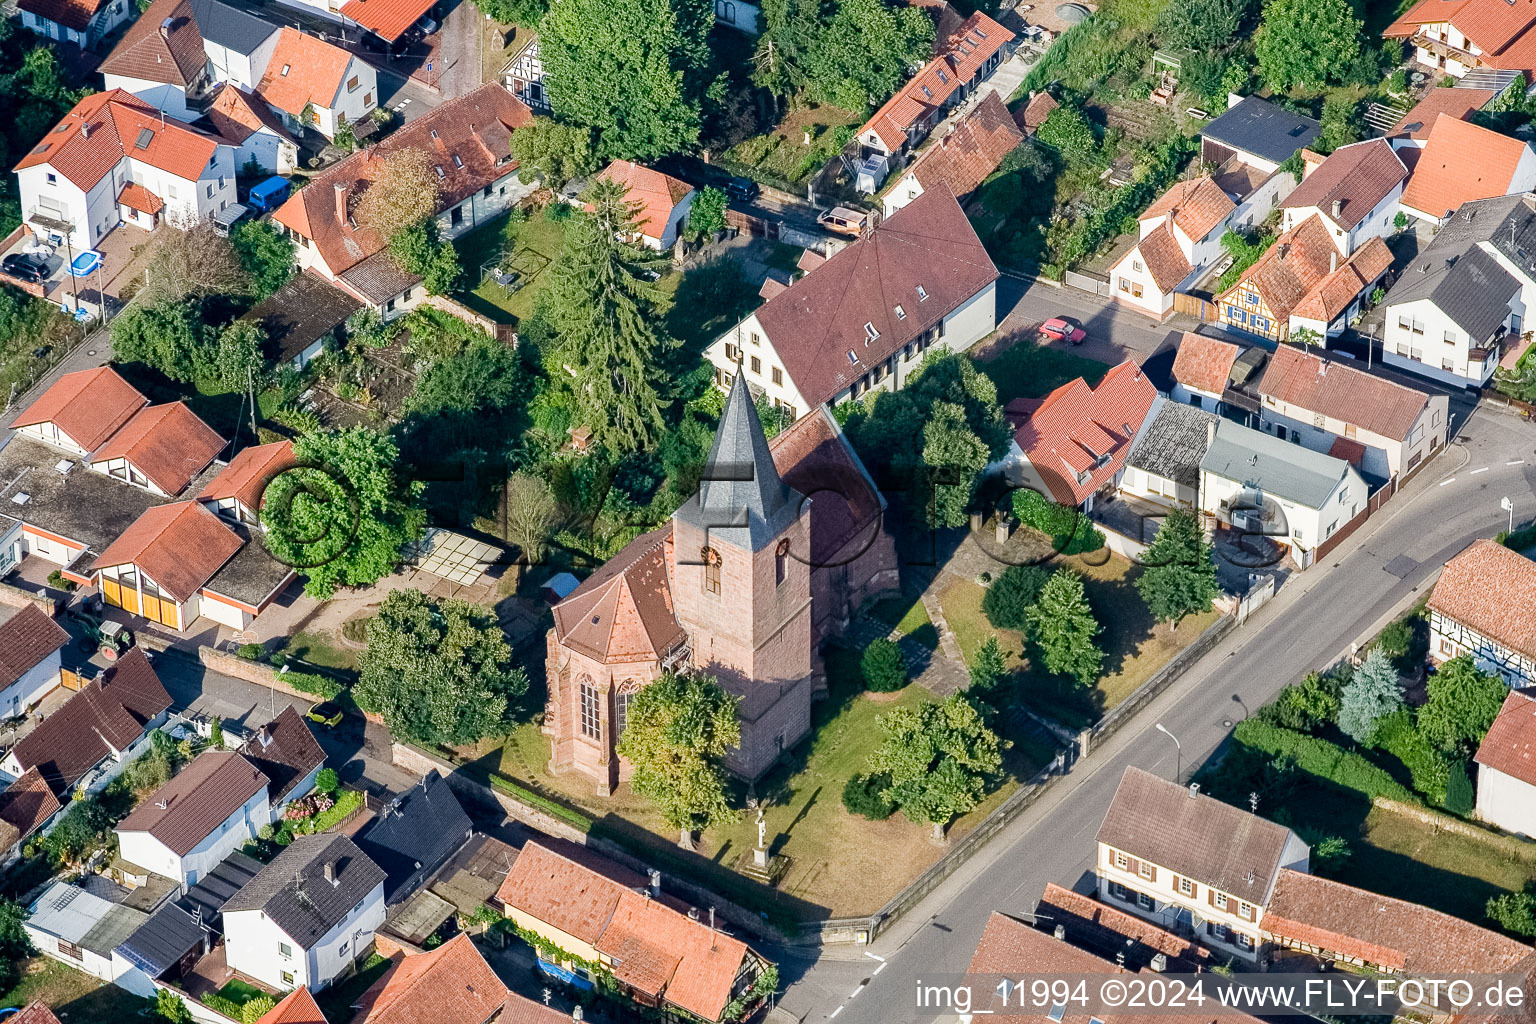 Vue aérienne de Bâtiment d'église au centre du village à Rohrbach dans le département Rhénanie-Palatinat, Allemagne